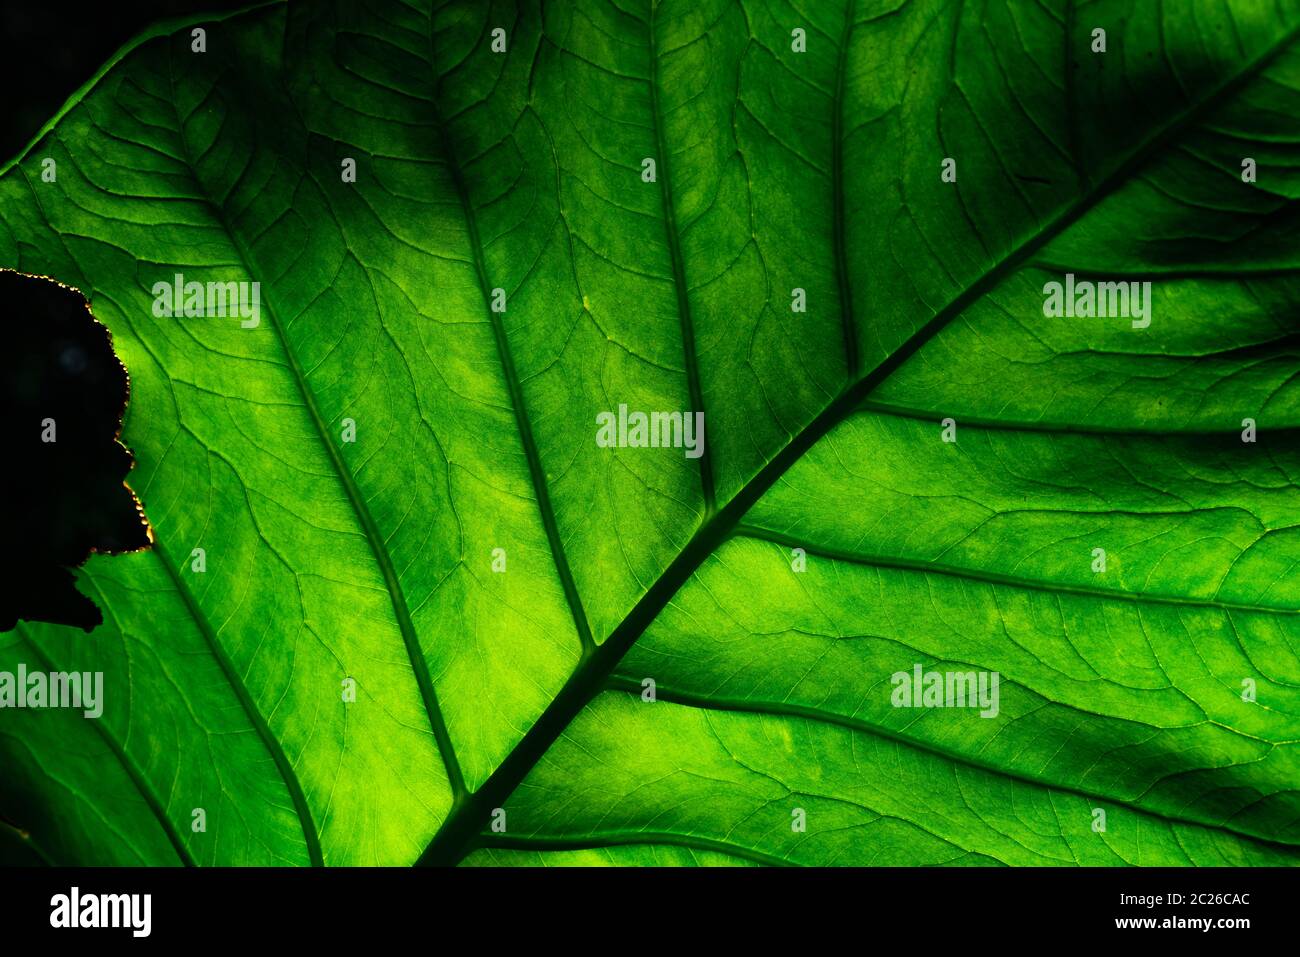 Primo piano dettaglio di incomplete foglie verdi su sfondo scuro. Foglia verde mangiato dal Verme, Caterpillar, o un insetto. Foglie con una texture verde. Eco backgroun Foto Stock